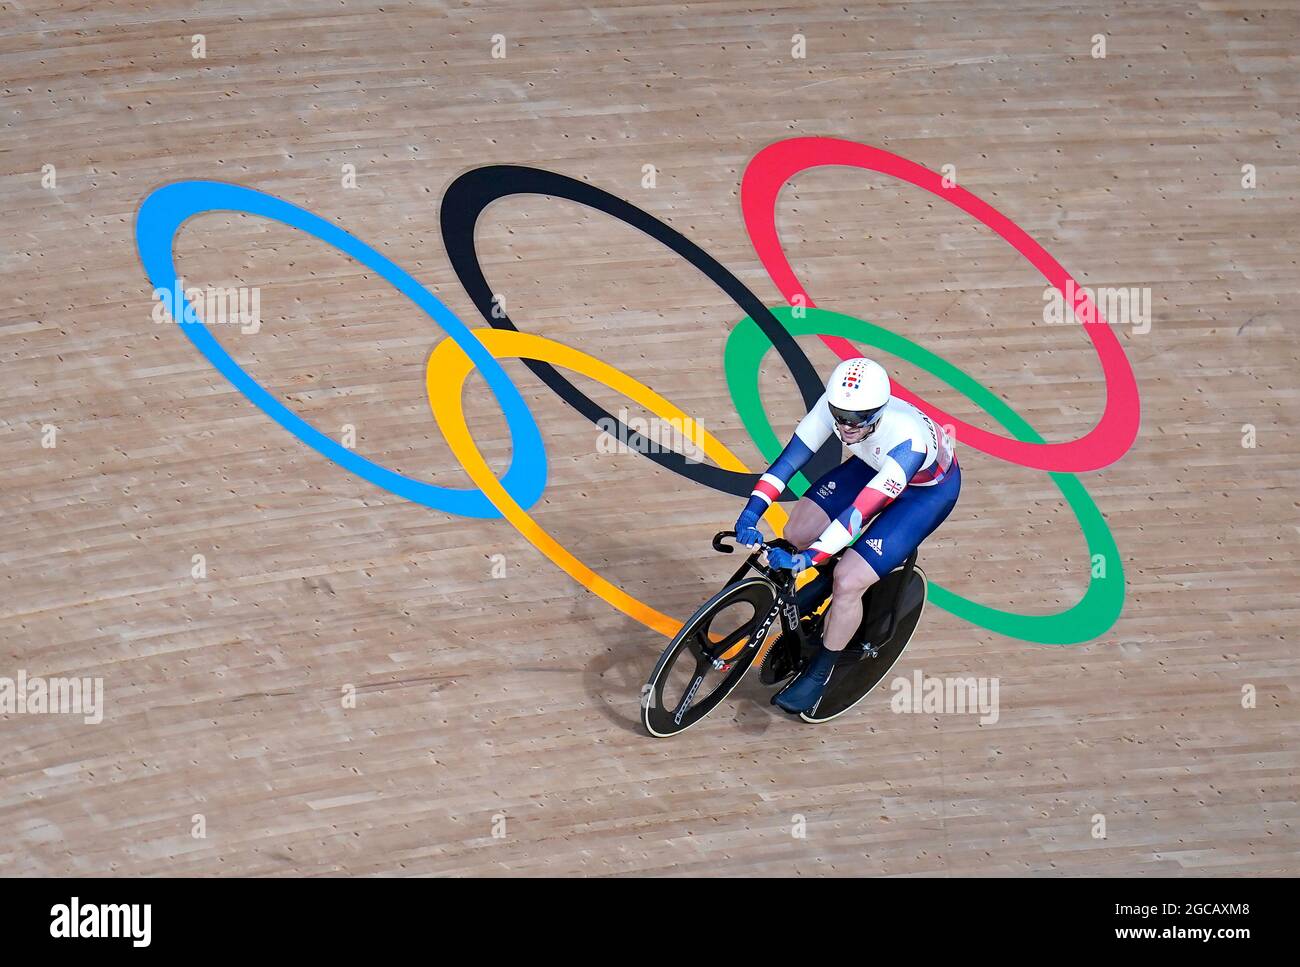 Jason Kenny, grand Bricien, lors des finales du quartier Keiran masculin au vélodrome d'Izu, le seizième jour des Jeux Olympiques de Tokyo en 2020 au Japon. Date de la photo: Dimanche 8 août 2021. Banque D'Images